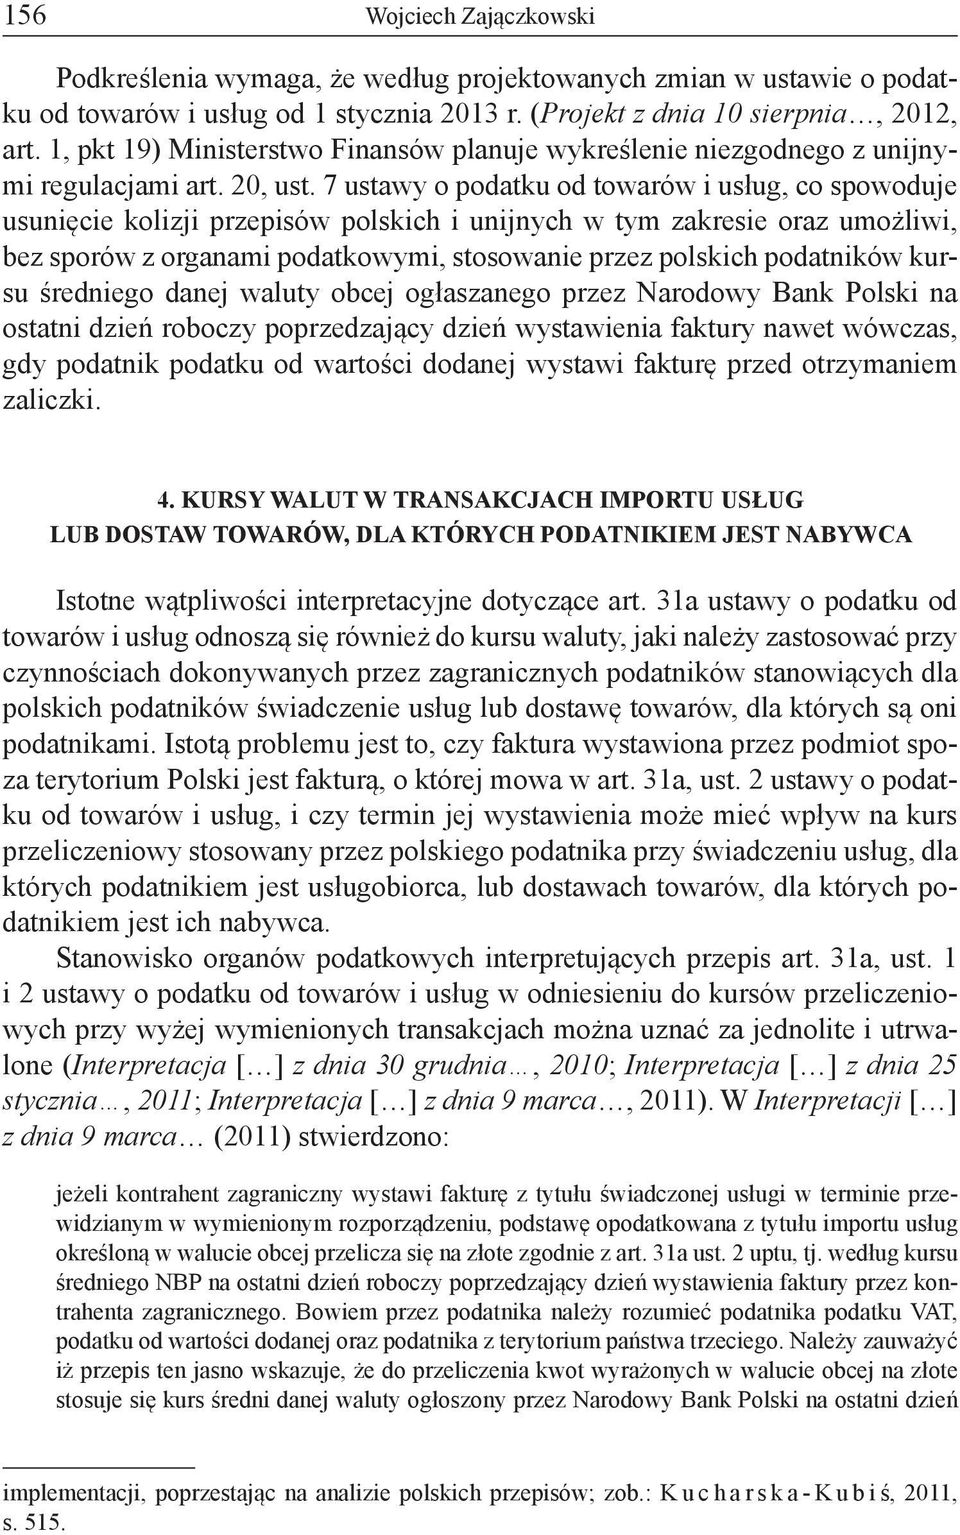 7 ustawy o podatku od towarów i usług, co spowoduje usunięcie kolizji przepisów polskich i unijnych w tym zakresie oraz umożliwi, bez sporów z organami podatkowymi, stosowanie przez polskich